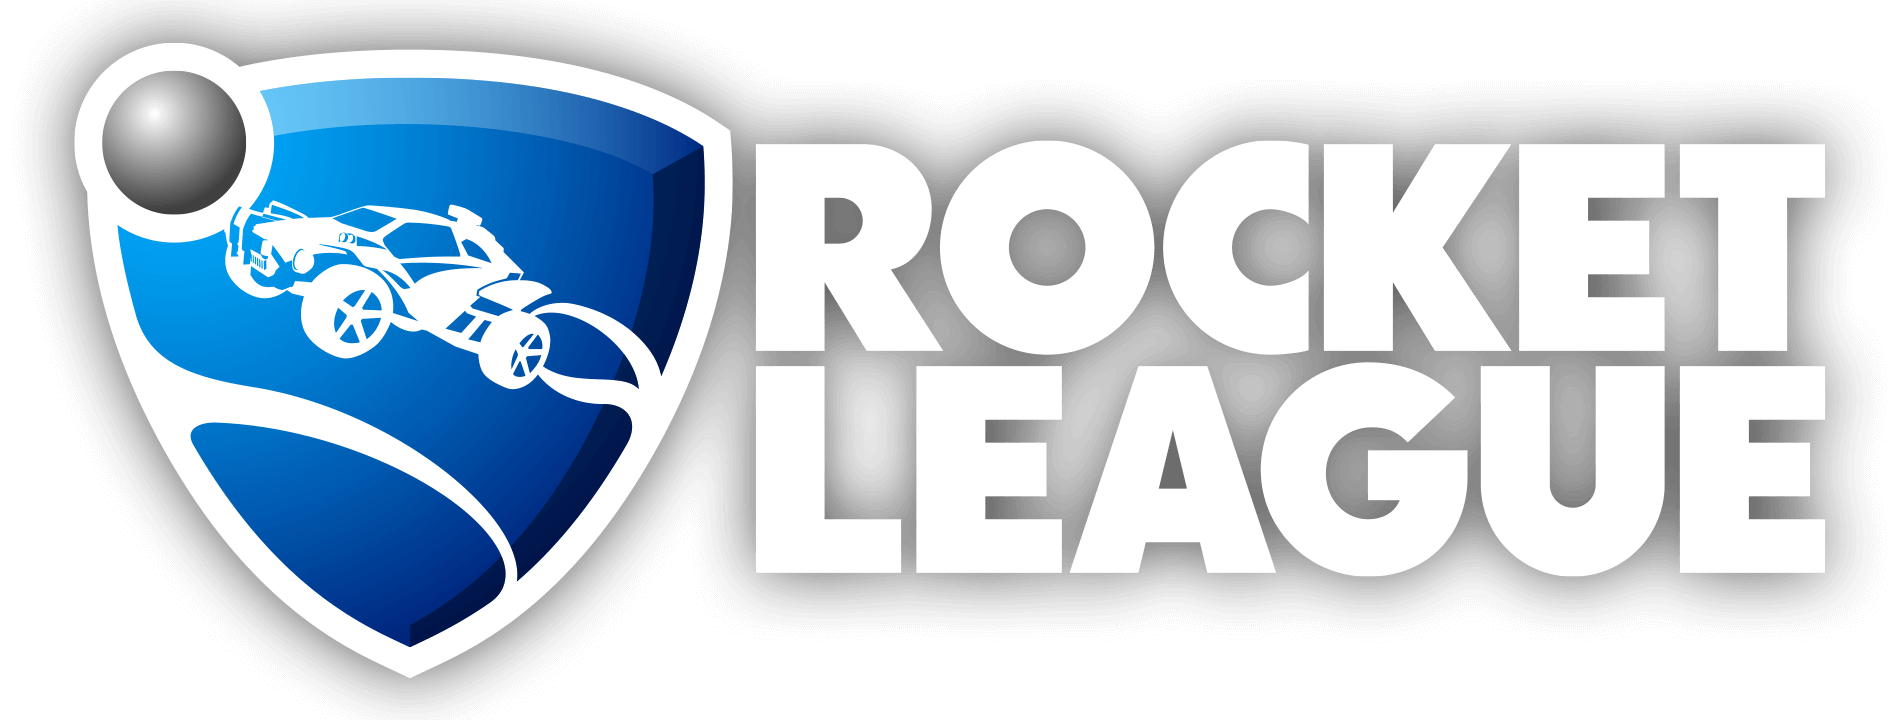 Rocket League’e 2 Yeni Araç Geliyor!